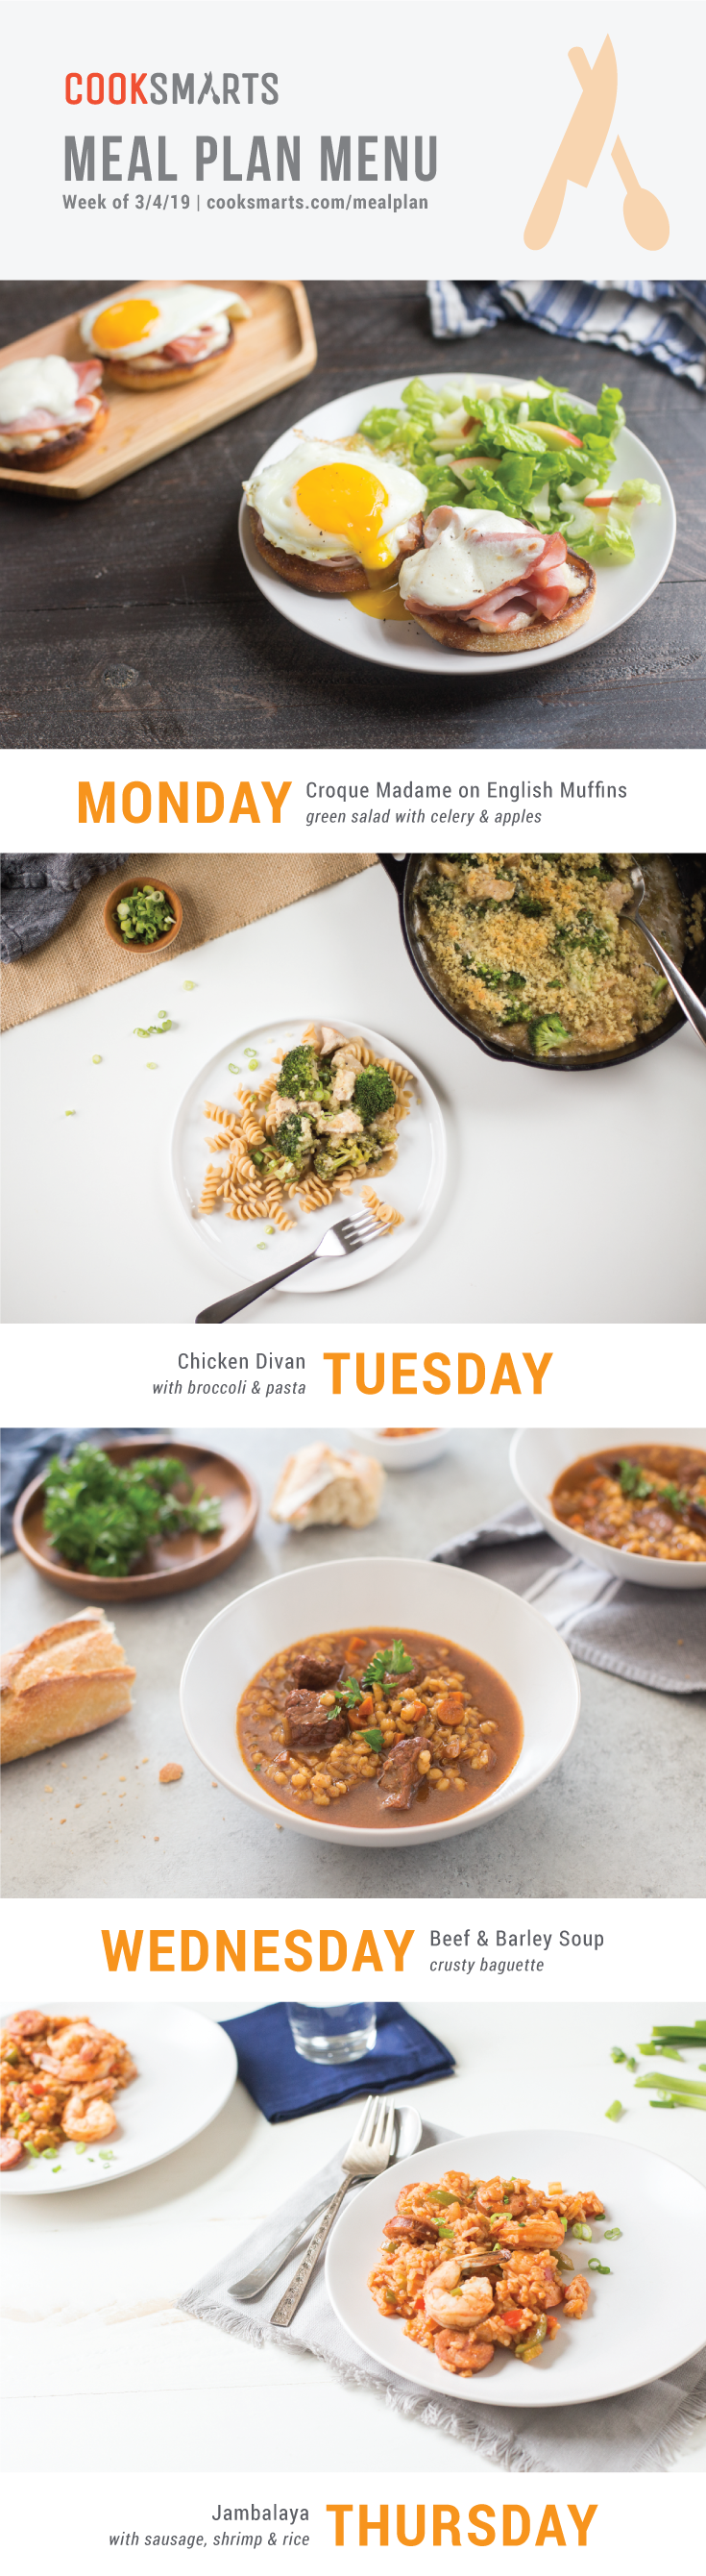 Weekly Meal Planner | Menu for Week of 3/4/19 via Cook Smarts